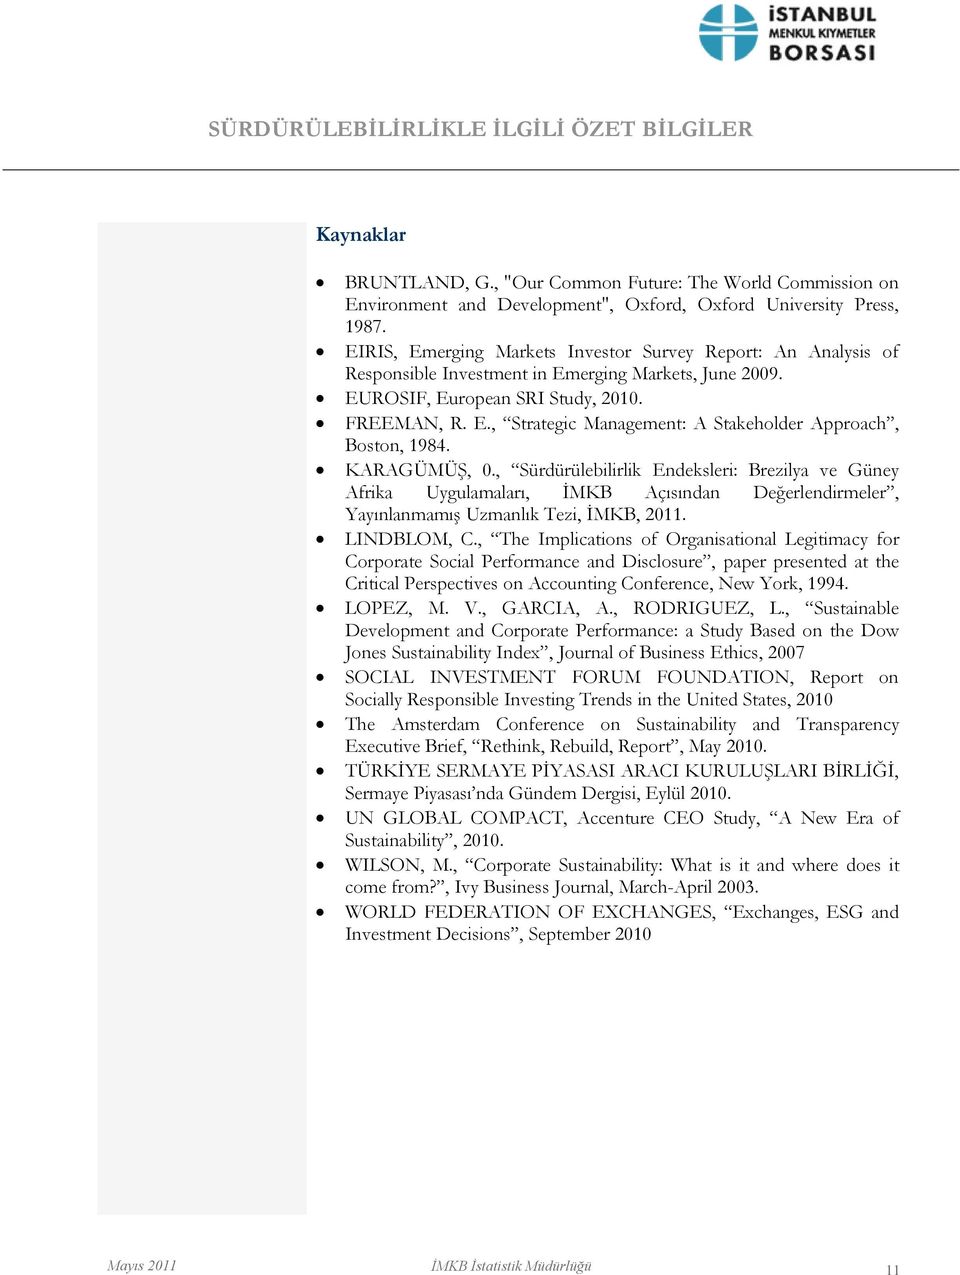 KARAGÜMÜġ, 0., Sürdürülebilirlik Endeksleri: Brezilya ve Güney Afrika Uygulamaları, ĠMKB Açısından Değerlendirmeler, YayınlanmamıĢ Uzmanlık Tezi, ĠMKB, 2011. LINDBLOM, C.